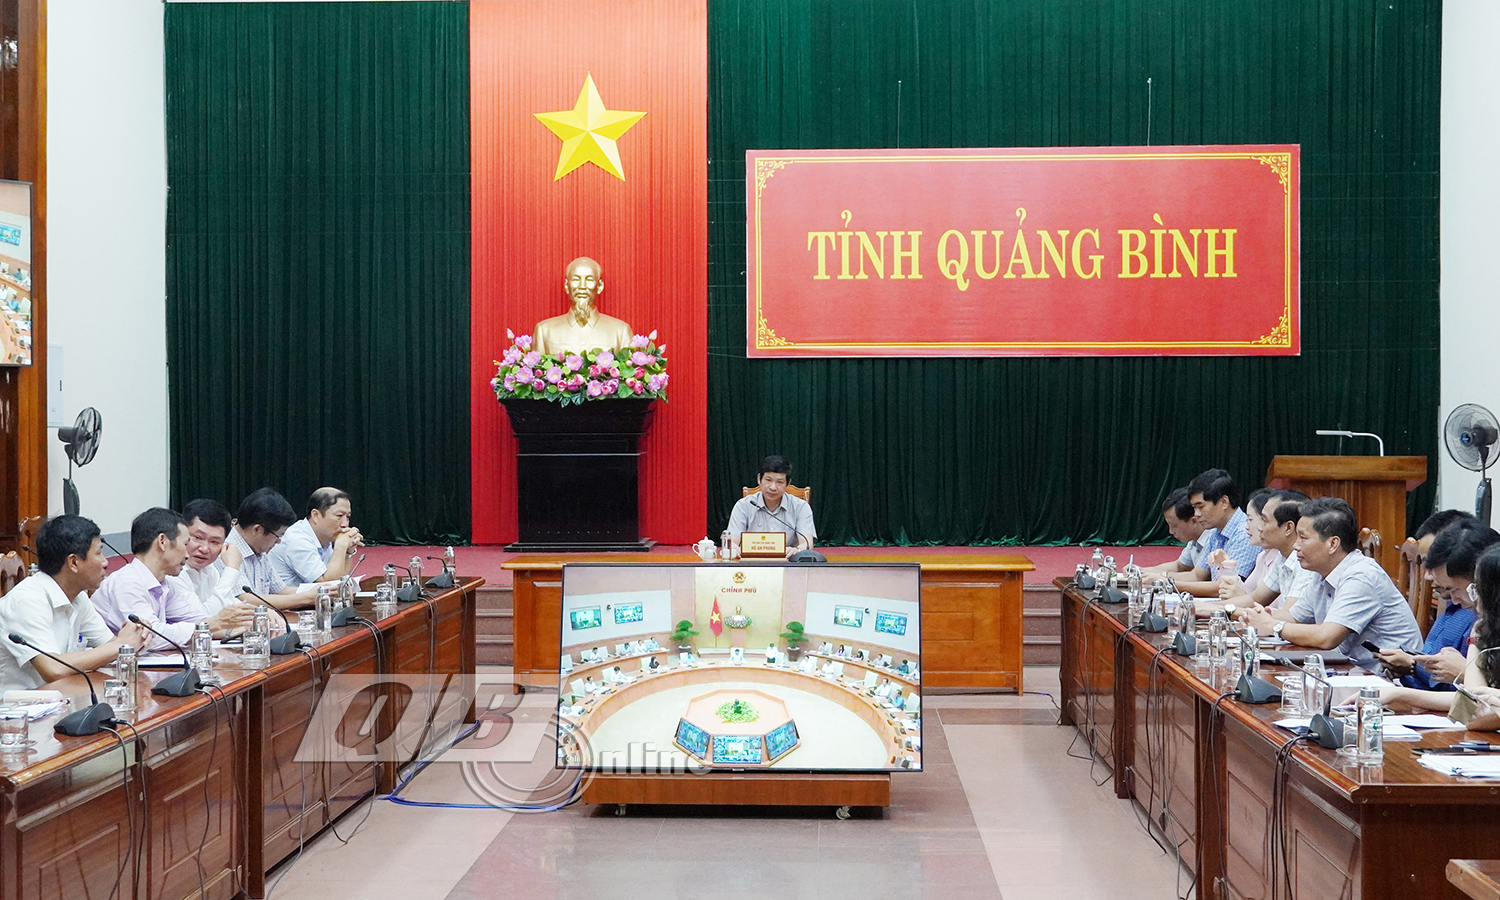 Đồng chí ác Phó Chủ tịch UBND tỉnh Hồ An Phong và đại biểu dự phiên họp tại điểm cầu tỉnh Quảng Bình.phó chủ tịch